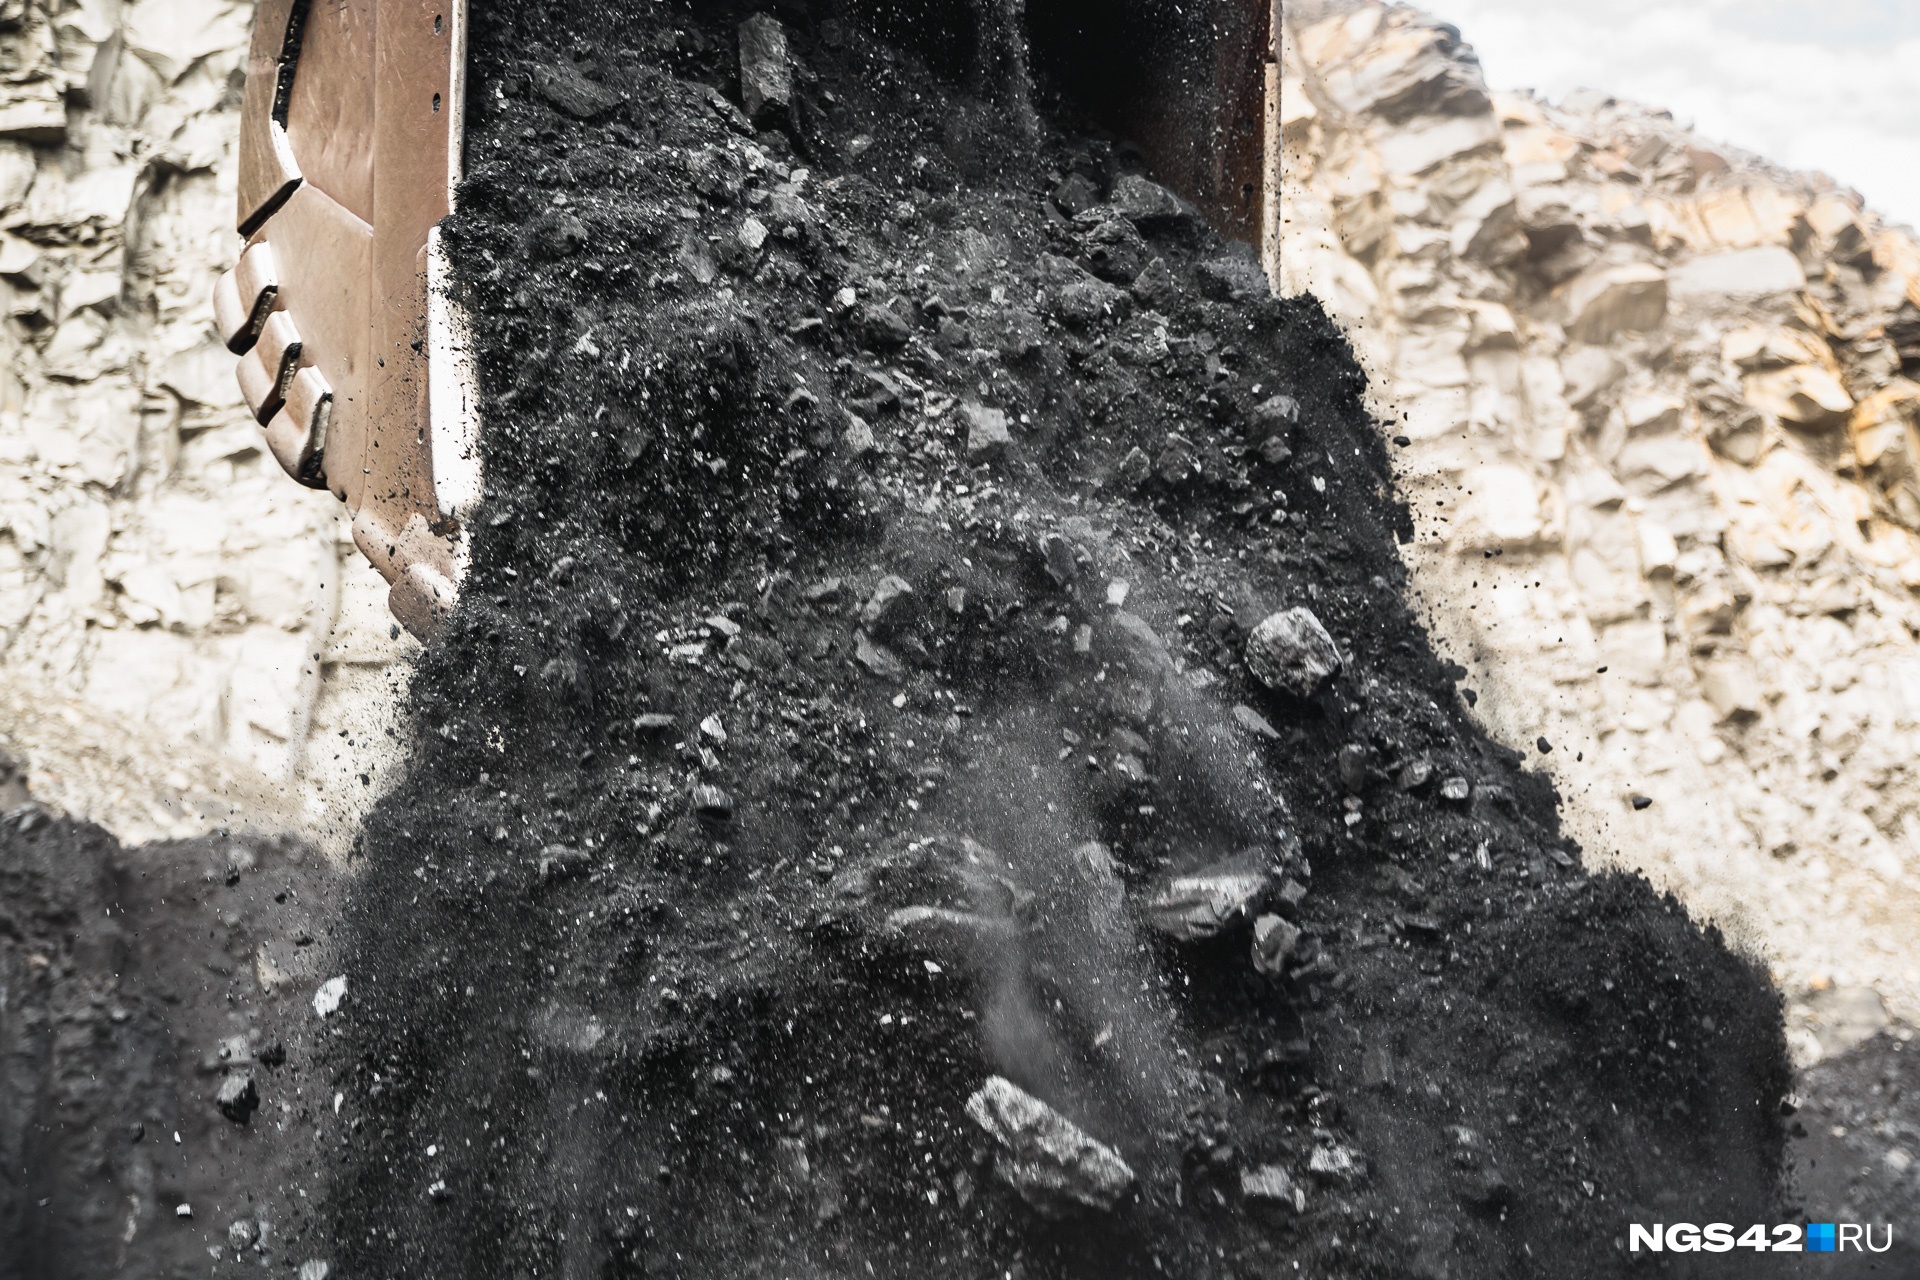 Добыча угля в Кузбассе продолжает снижаться. Изучаем данные за последние 10 месяцев